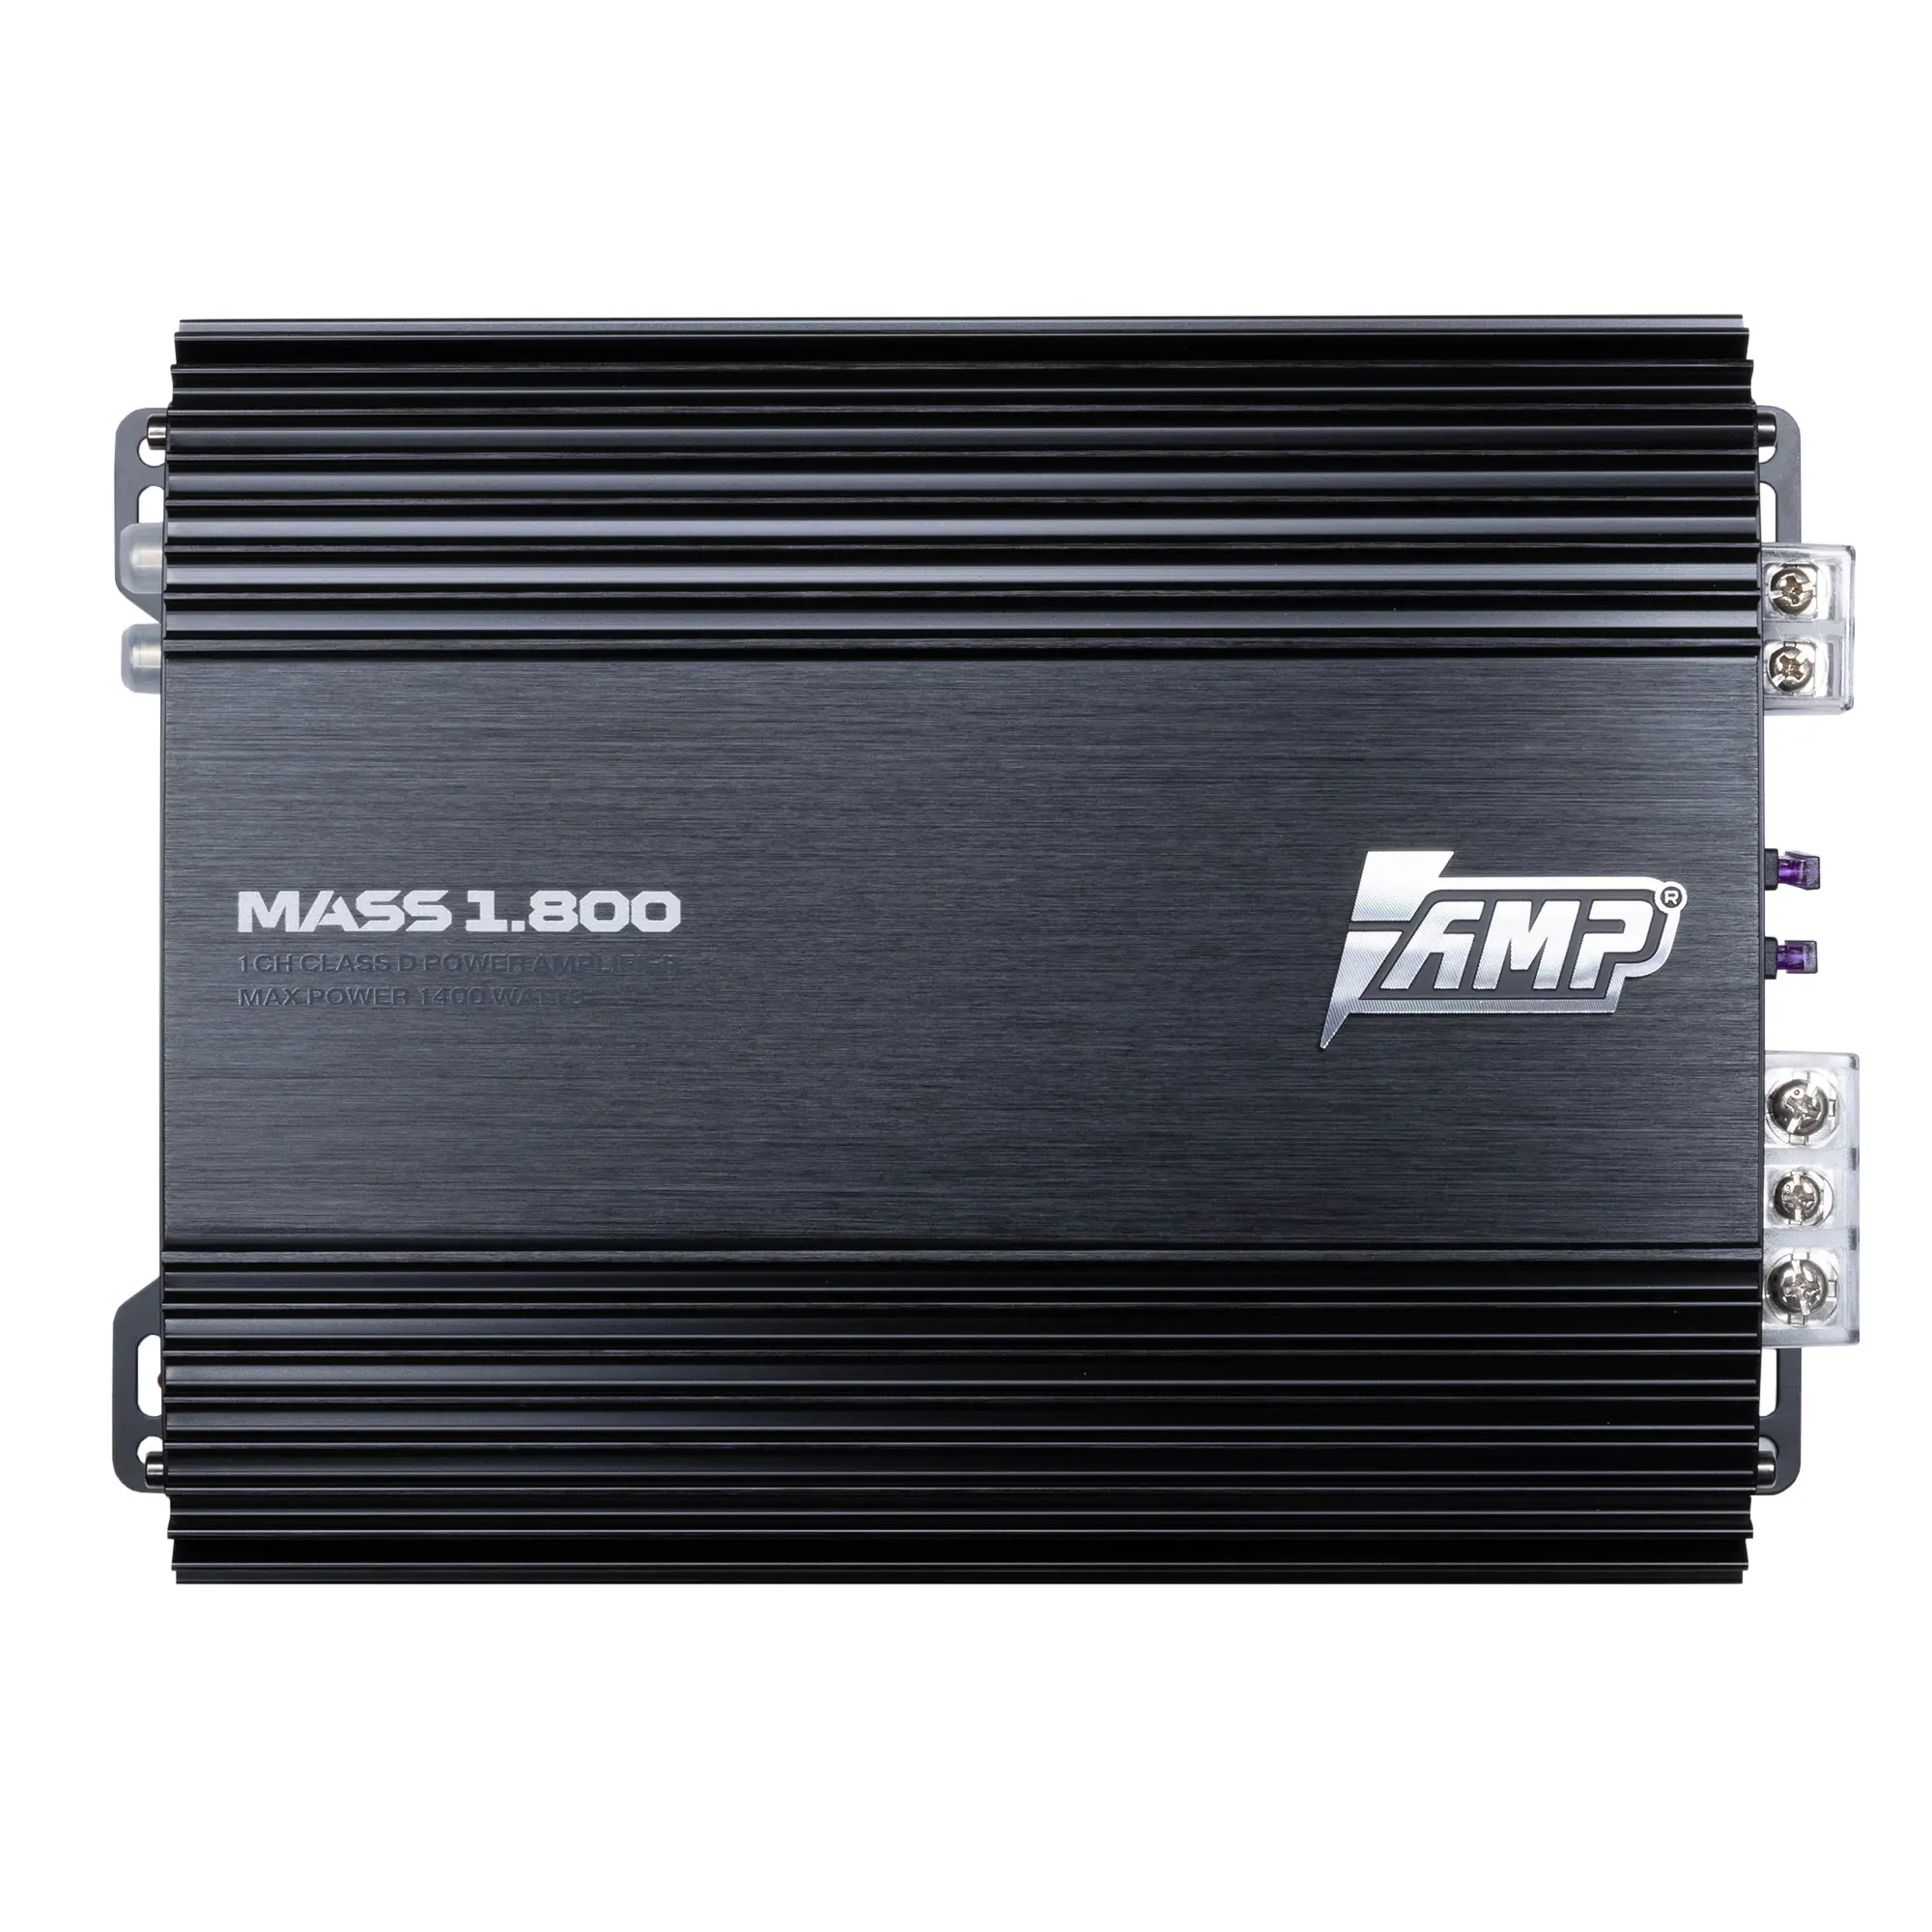 Усилитель AMP MASS 1.800 купить в интернет магазине AMPGROUP.  Усилитель AMP MASS 1.800   цены, большой каталог, новинки.
